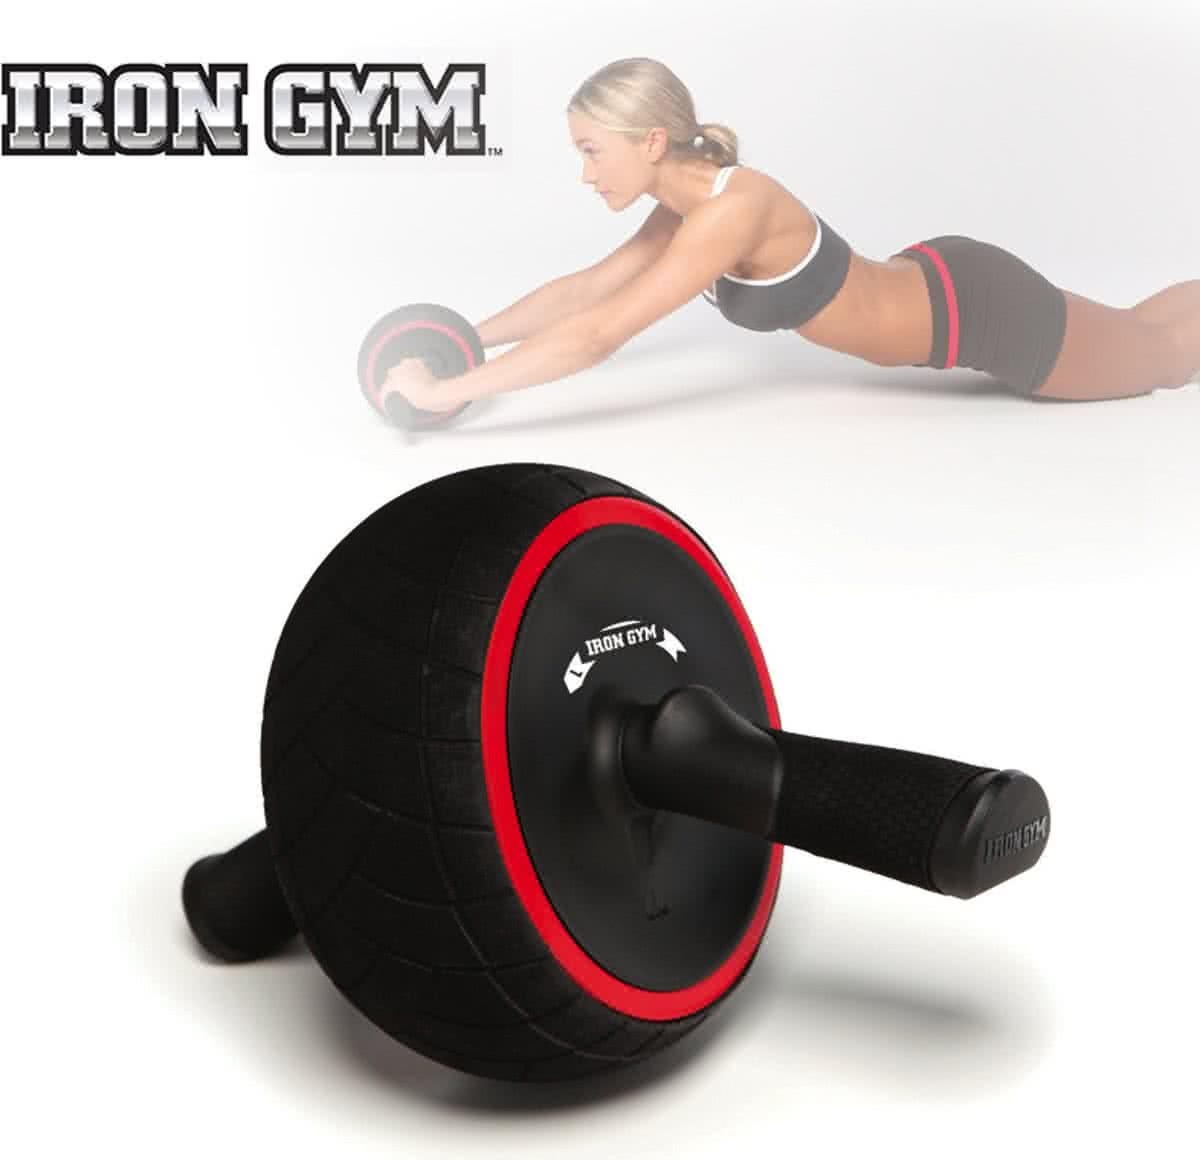 Iron Gym Iron Gym Speed Abs